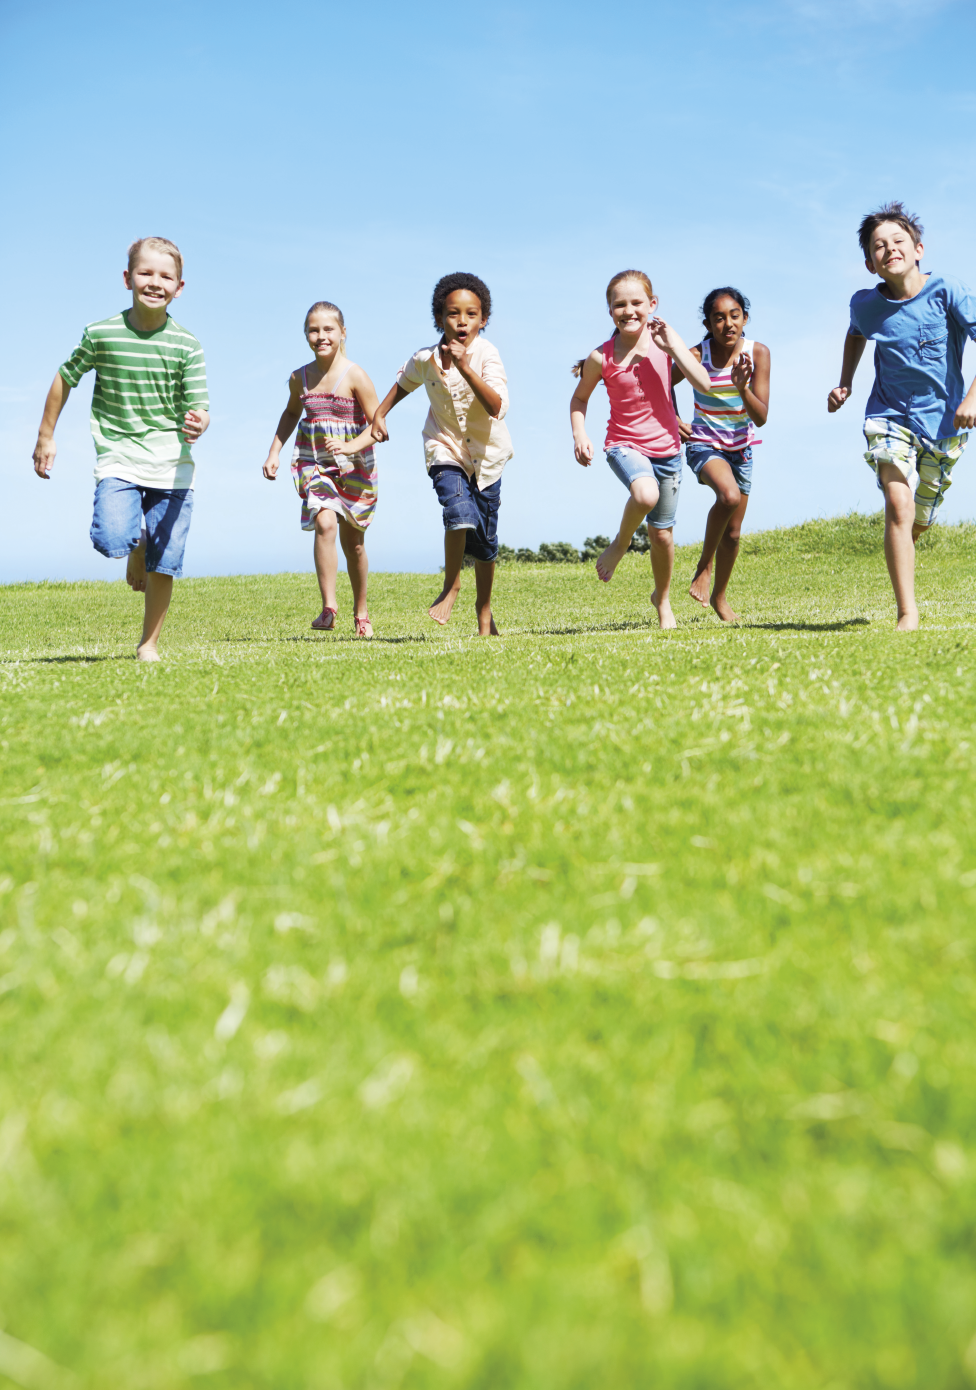 Imagem: Fotografia. Crianças diversas, sendo três meninos e três meninas com roupas coloridas. Estão correndo em um gramado em direção à câmera. Fim da imagem.